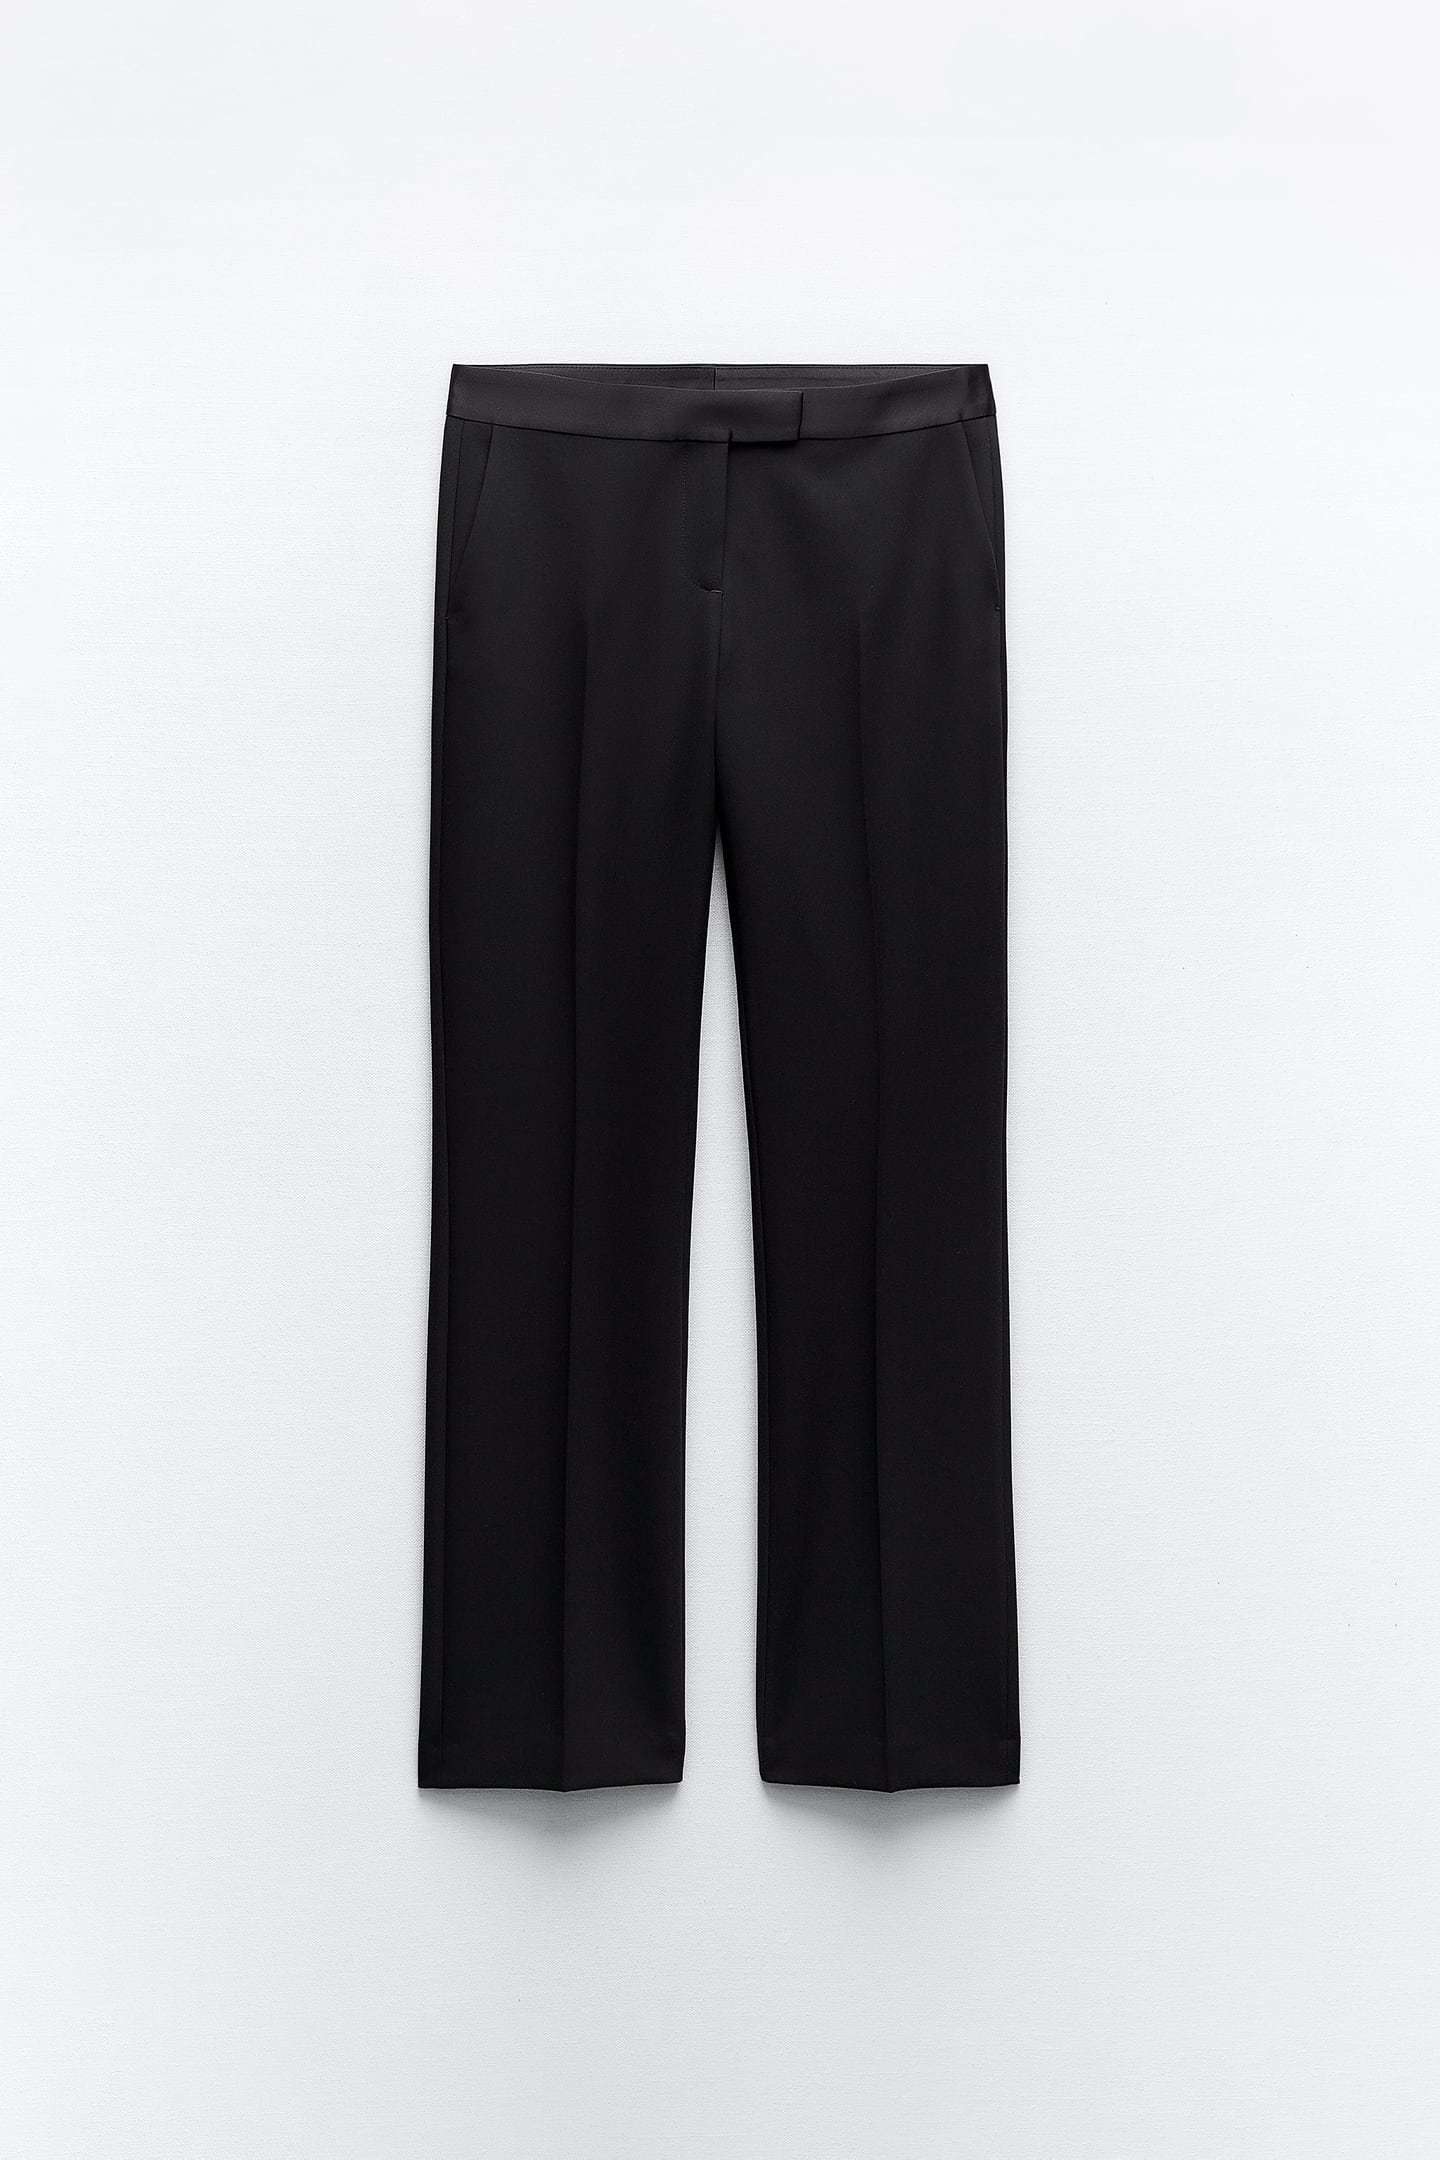 Pantalón de esmoquin de Zara (29,95 euros).